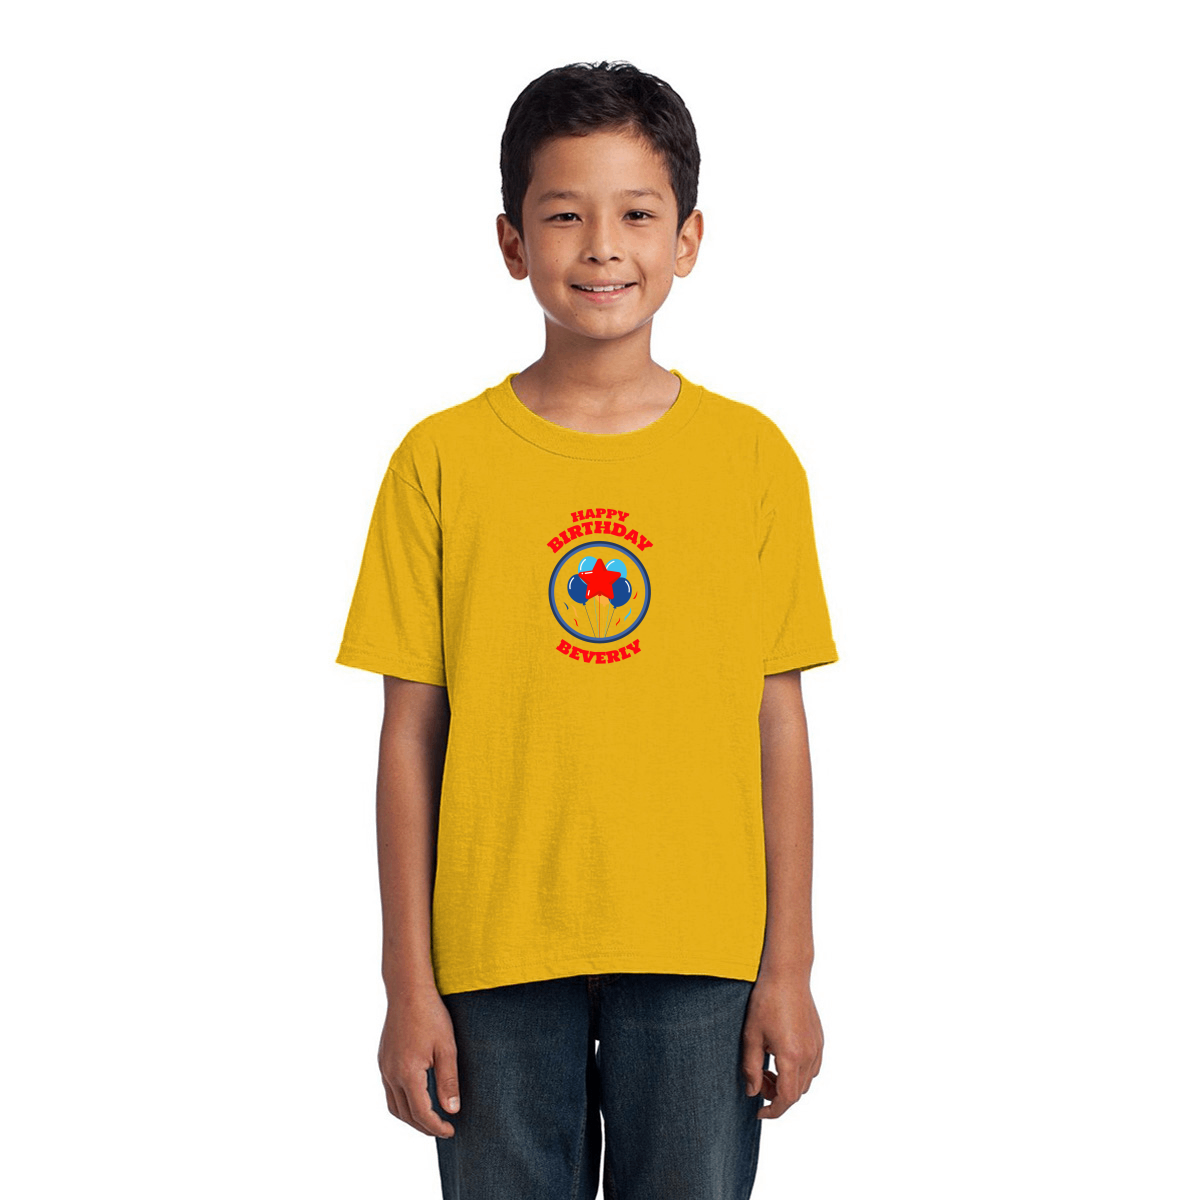 Happy Birthday Beverly Toddler T-shirt | Yellow